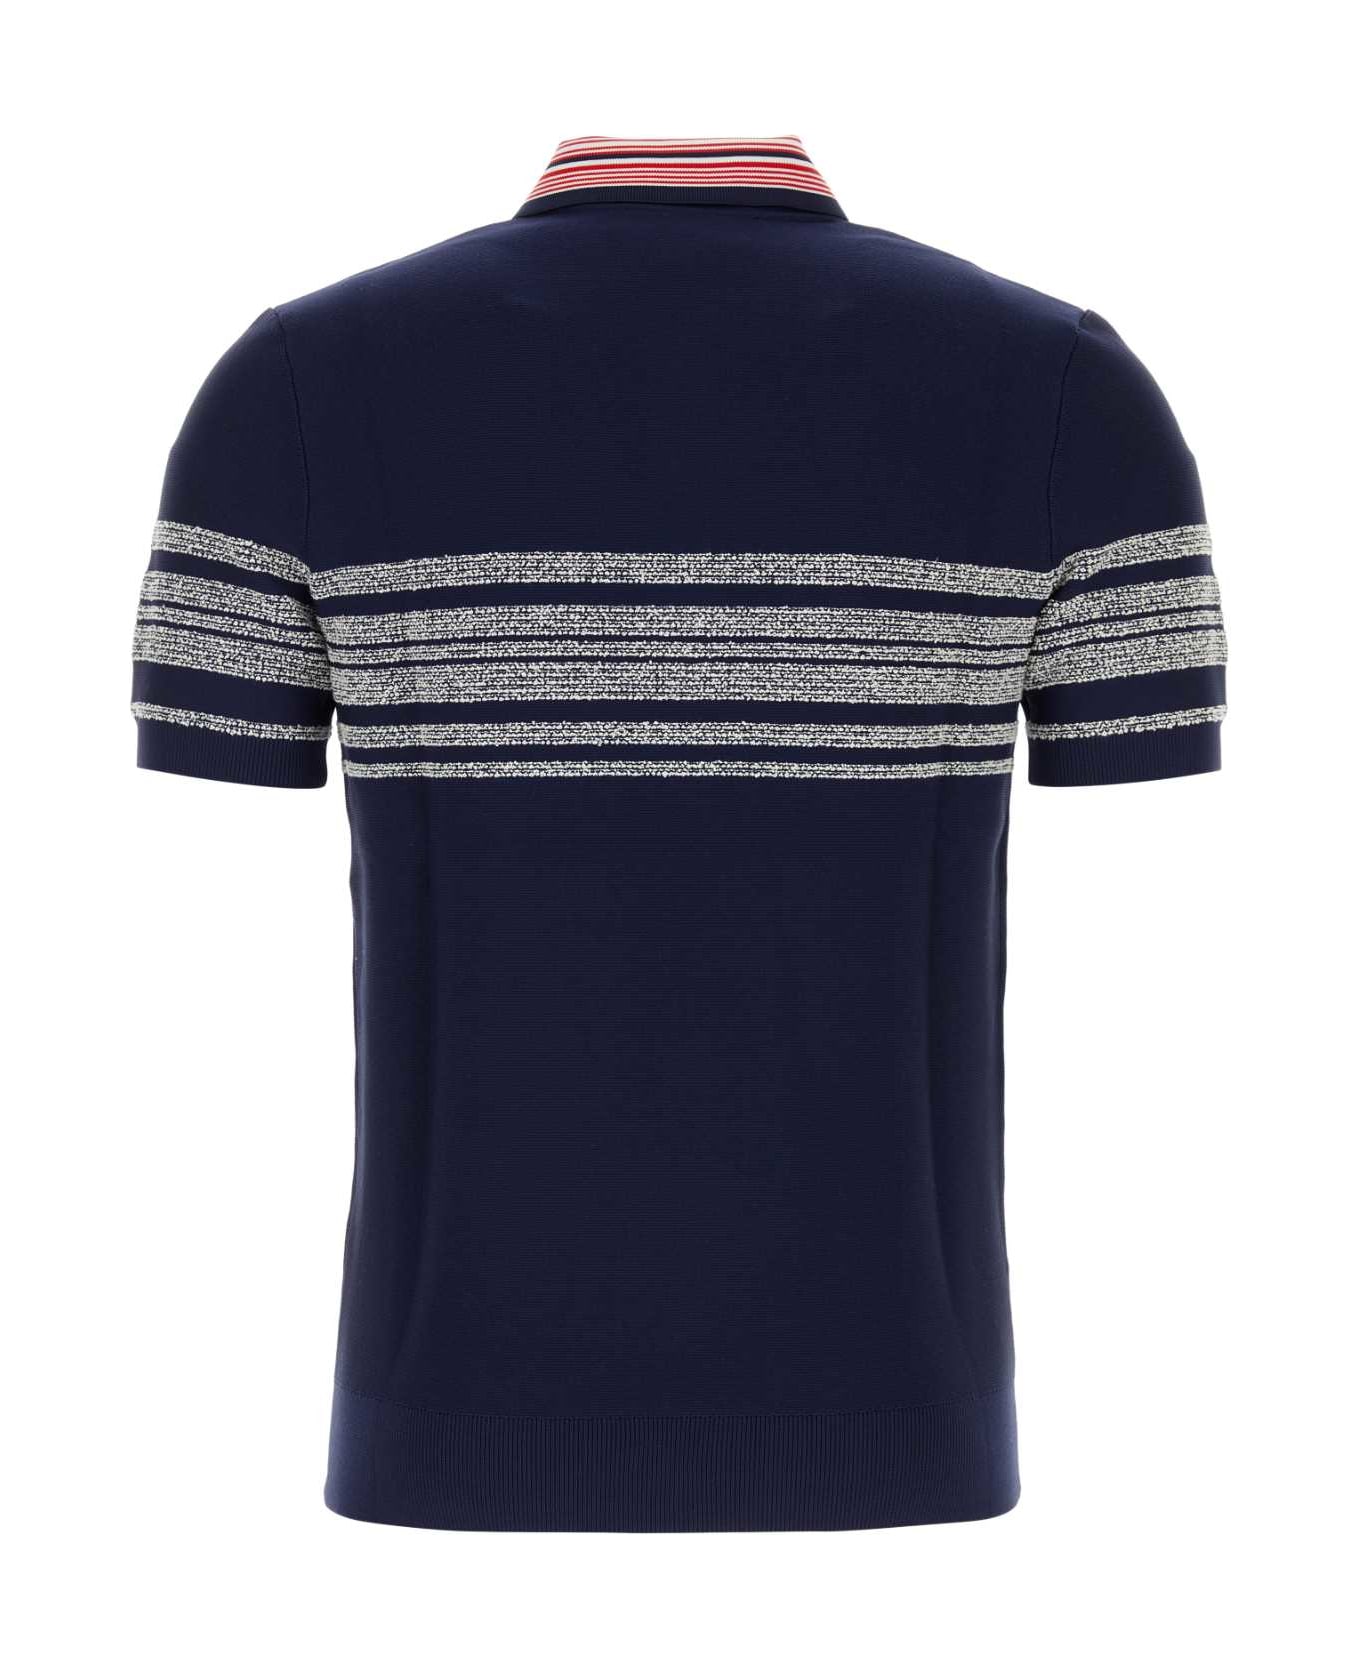 Wales Bonner Dark Blue Nylon Blend Dawn Knit Polo Shirt - NAVREDWHI ポロシャツ